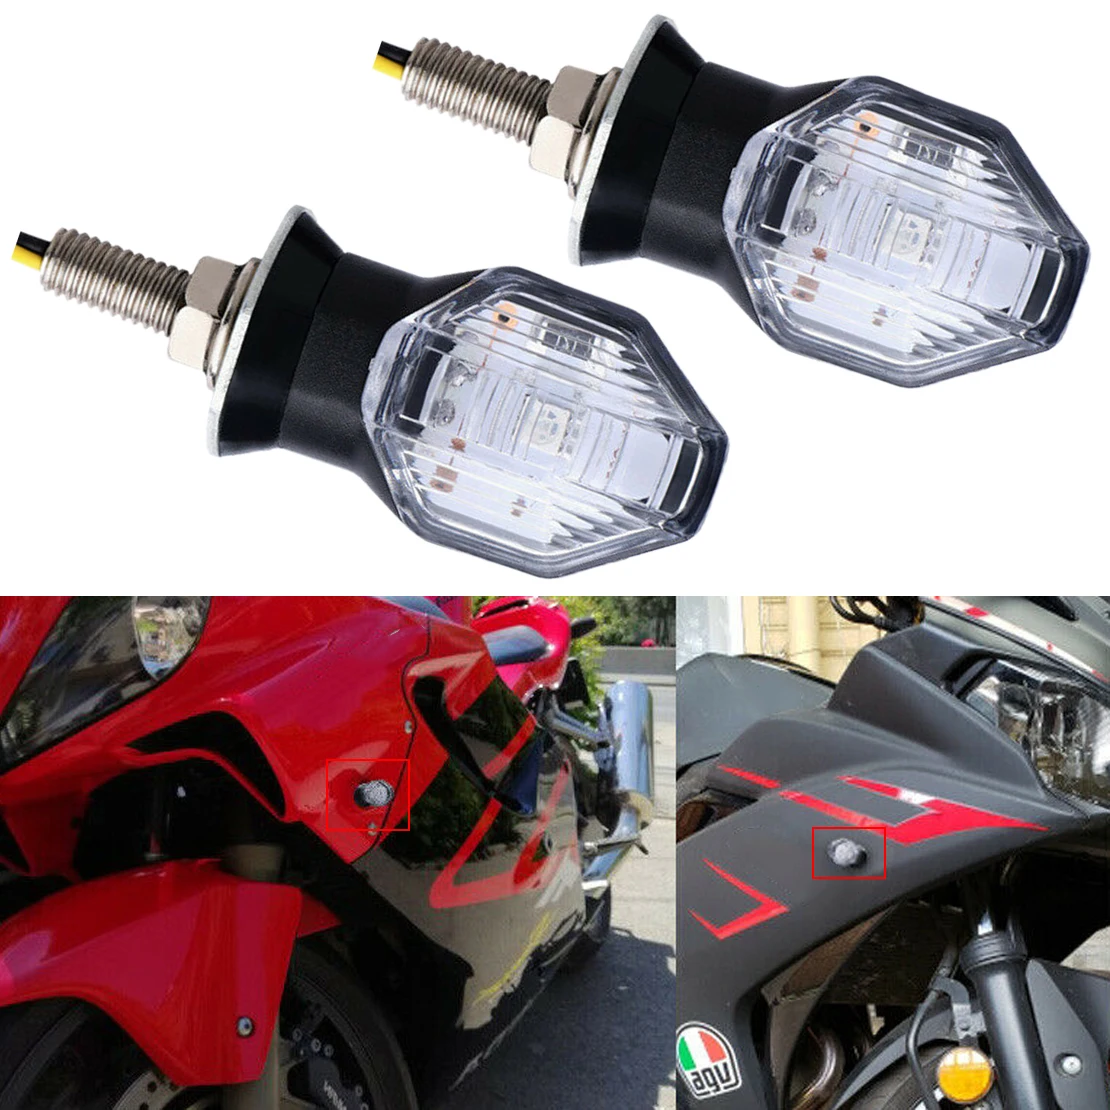 

1 пара 12 в мини светодиодный указатель поворота для мотоцикла передний левый правый индикатор поворота свет янтарсветильник подходит для Suzuki Honda внедорожник